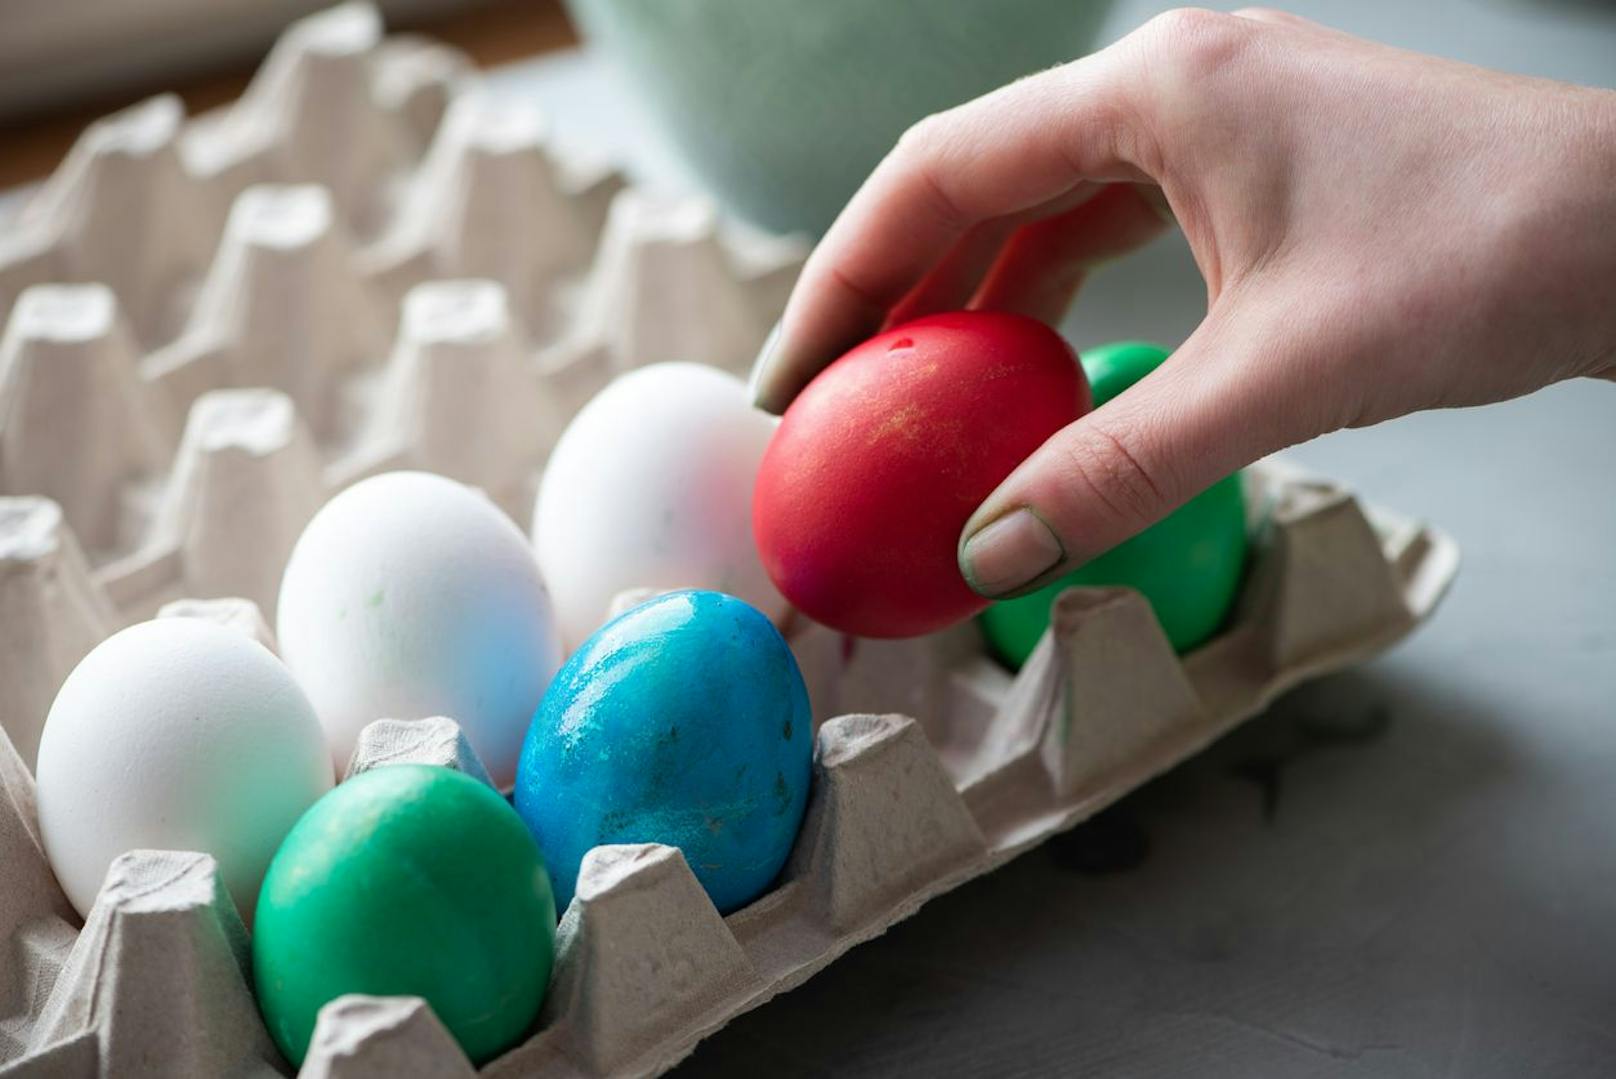 Wenn nach dem Feiern noch ein paar hartgekochte Eier über bleiben, dann kannst du diese ruhig einfrieren. Diese halten oft länger als was du auf der Verpackung liest. 